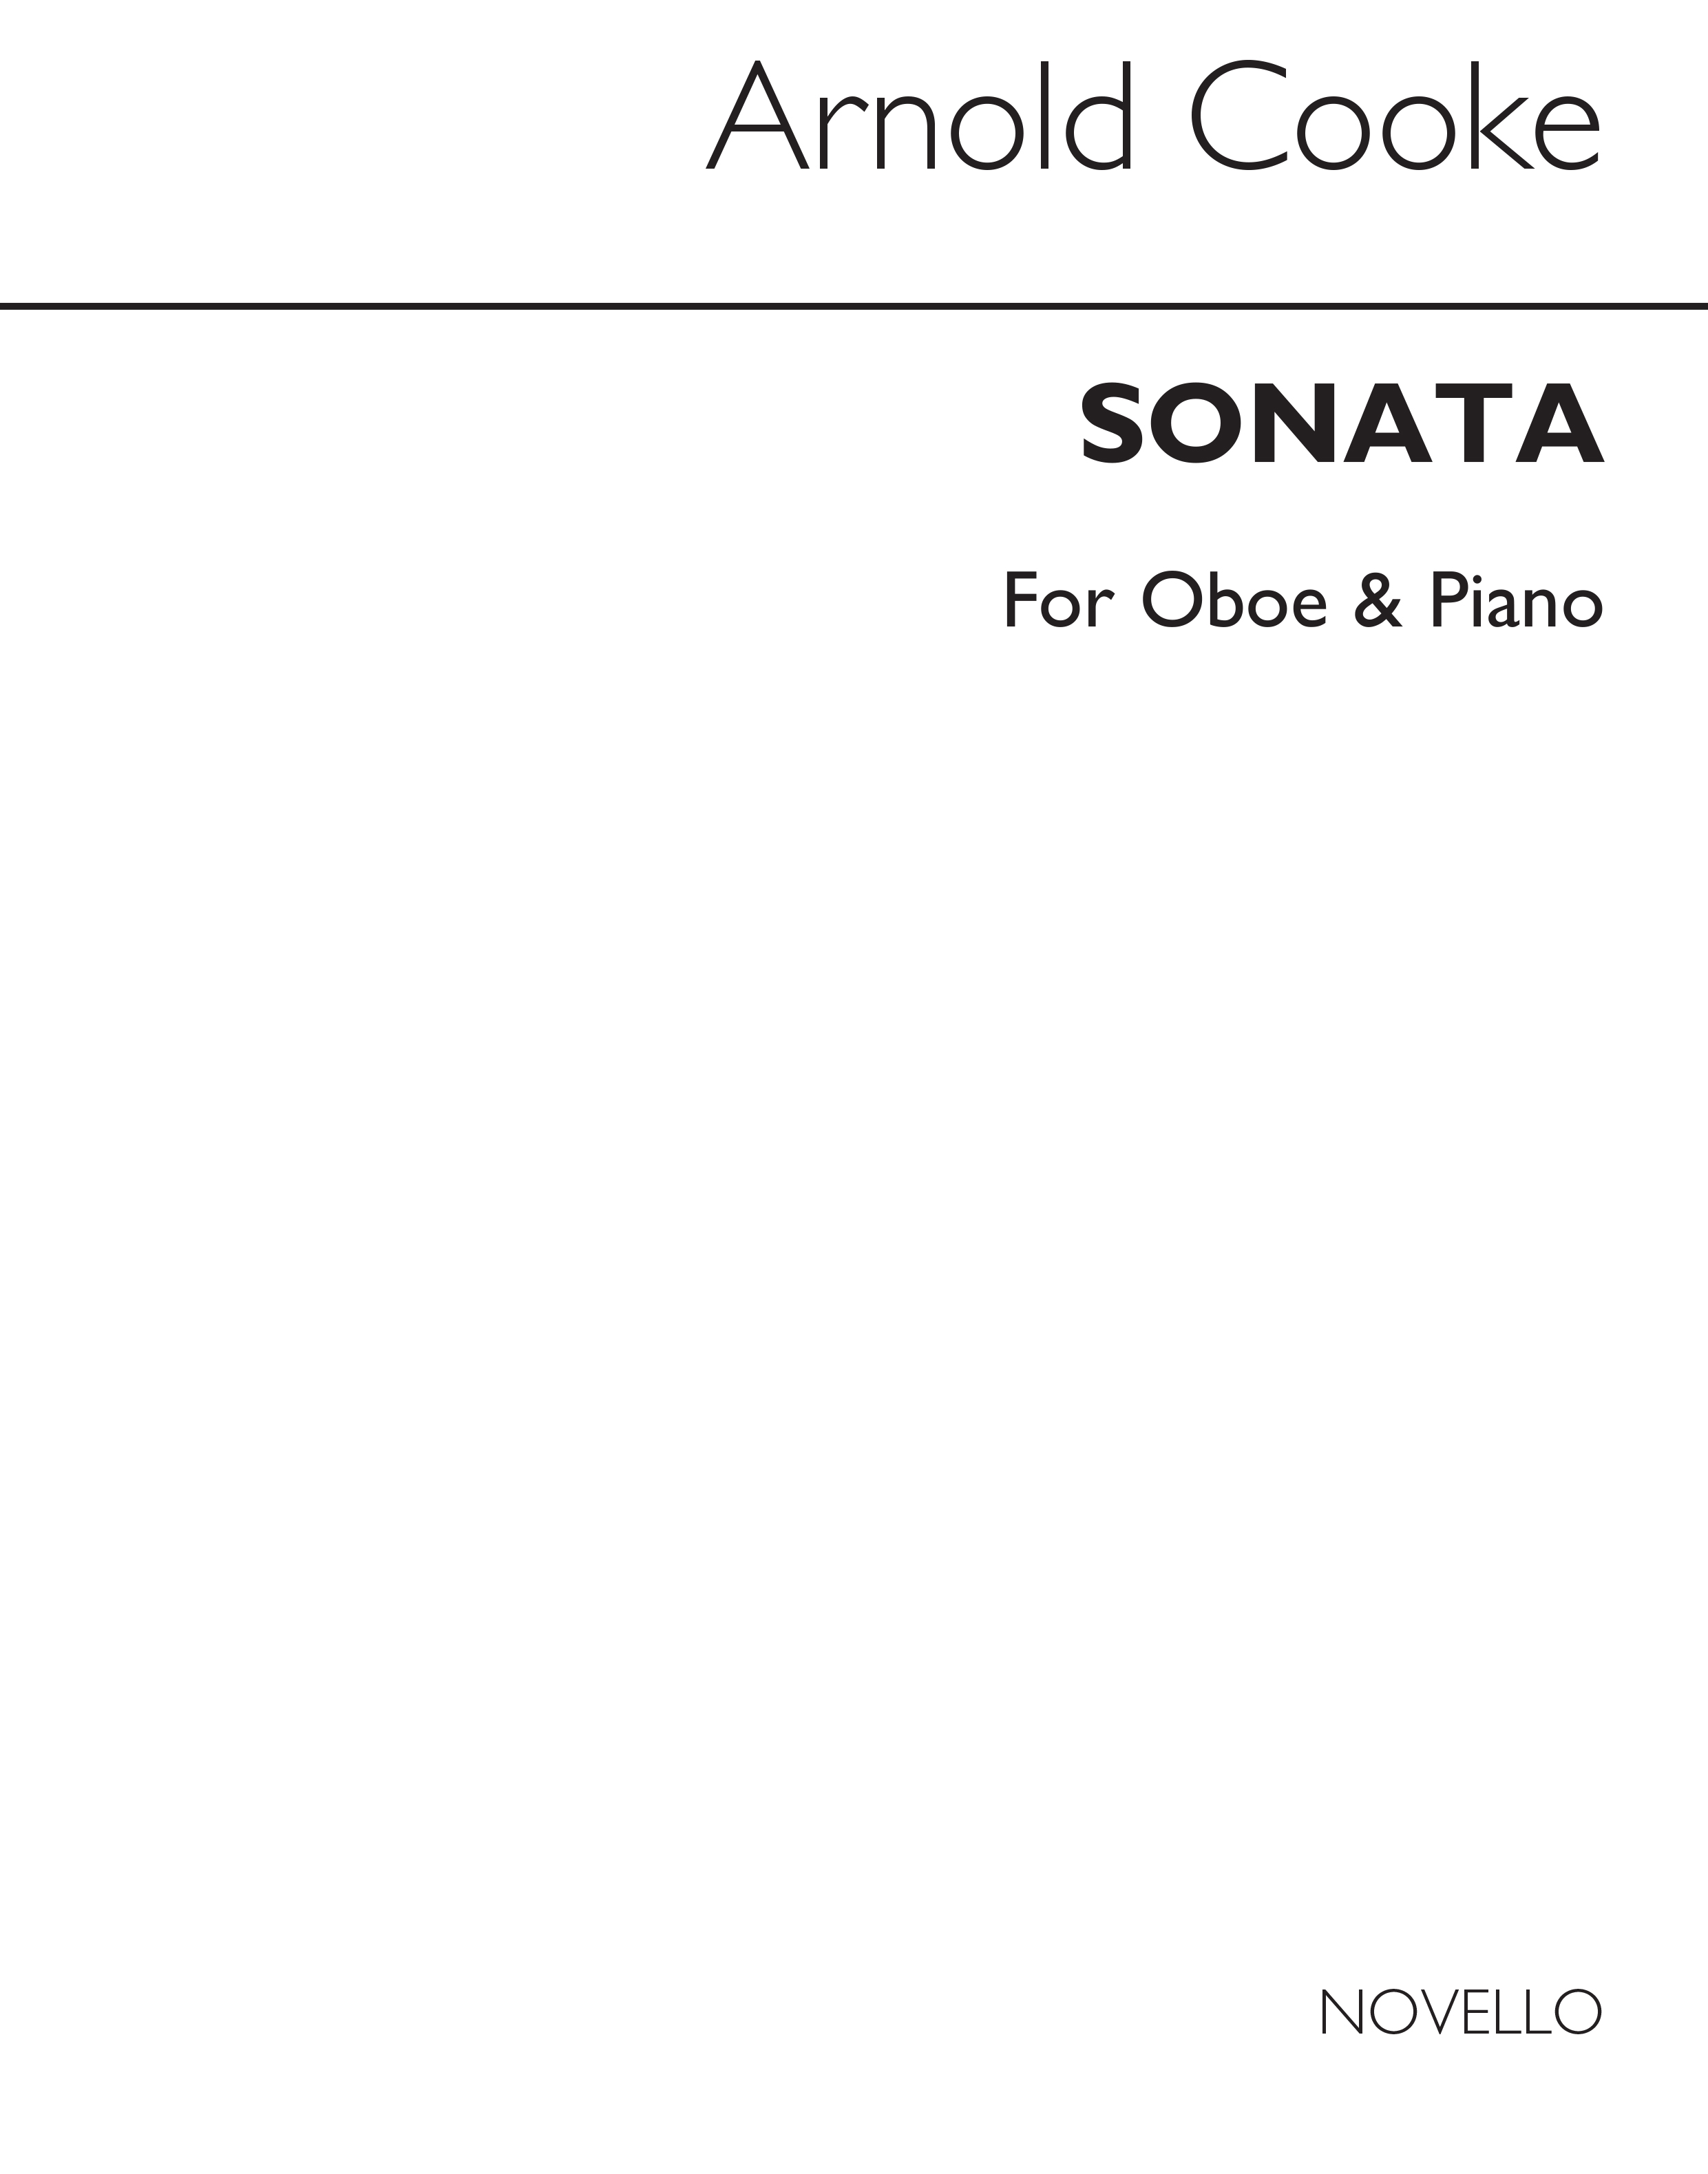 Arnold Cooke: Sonata Oboe/Pf